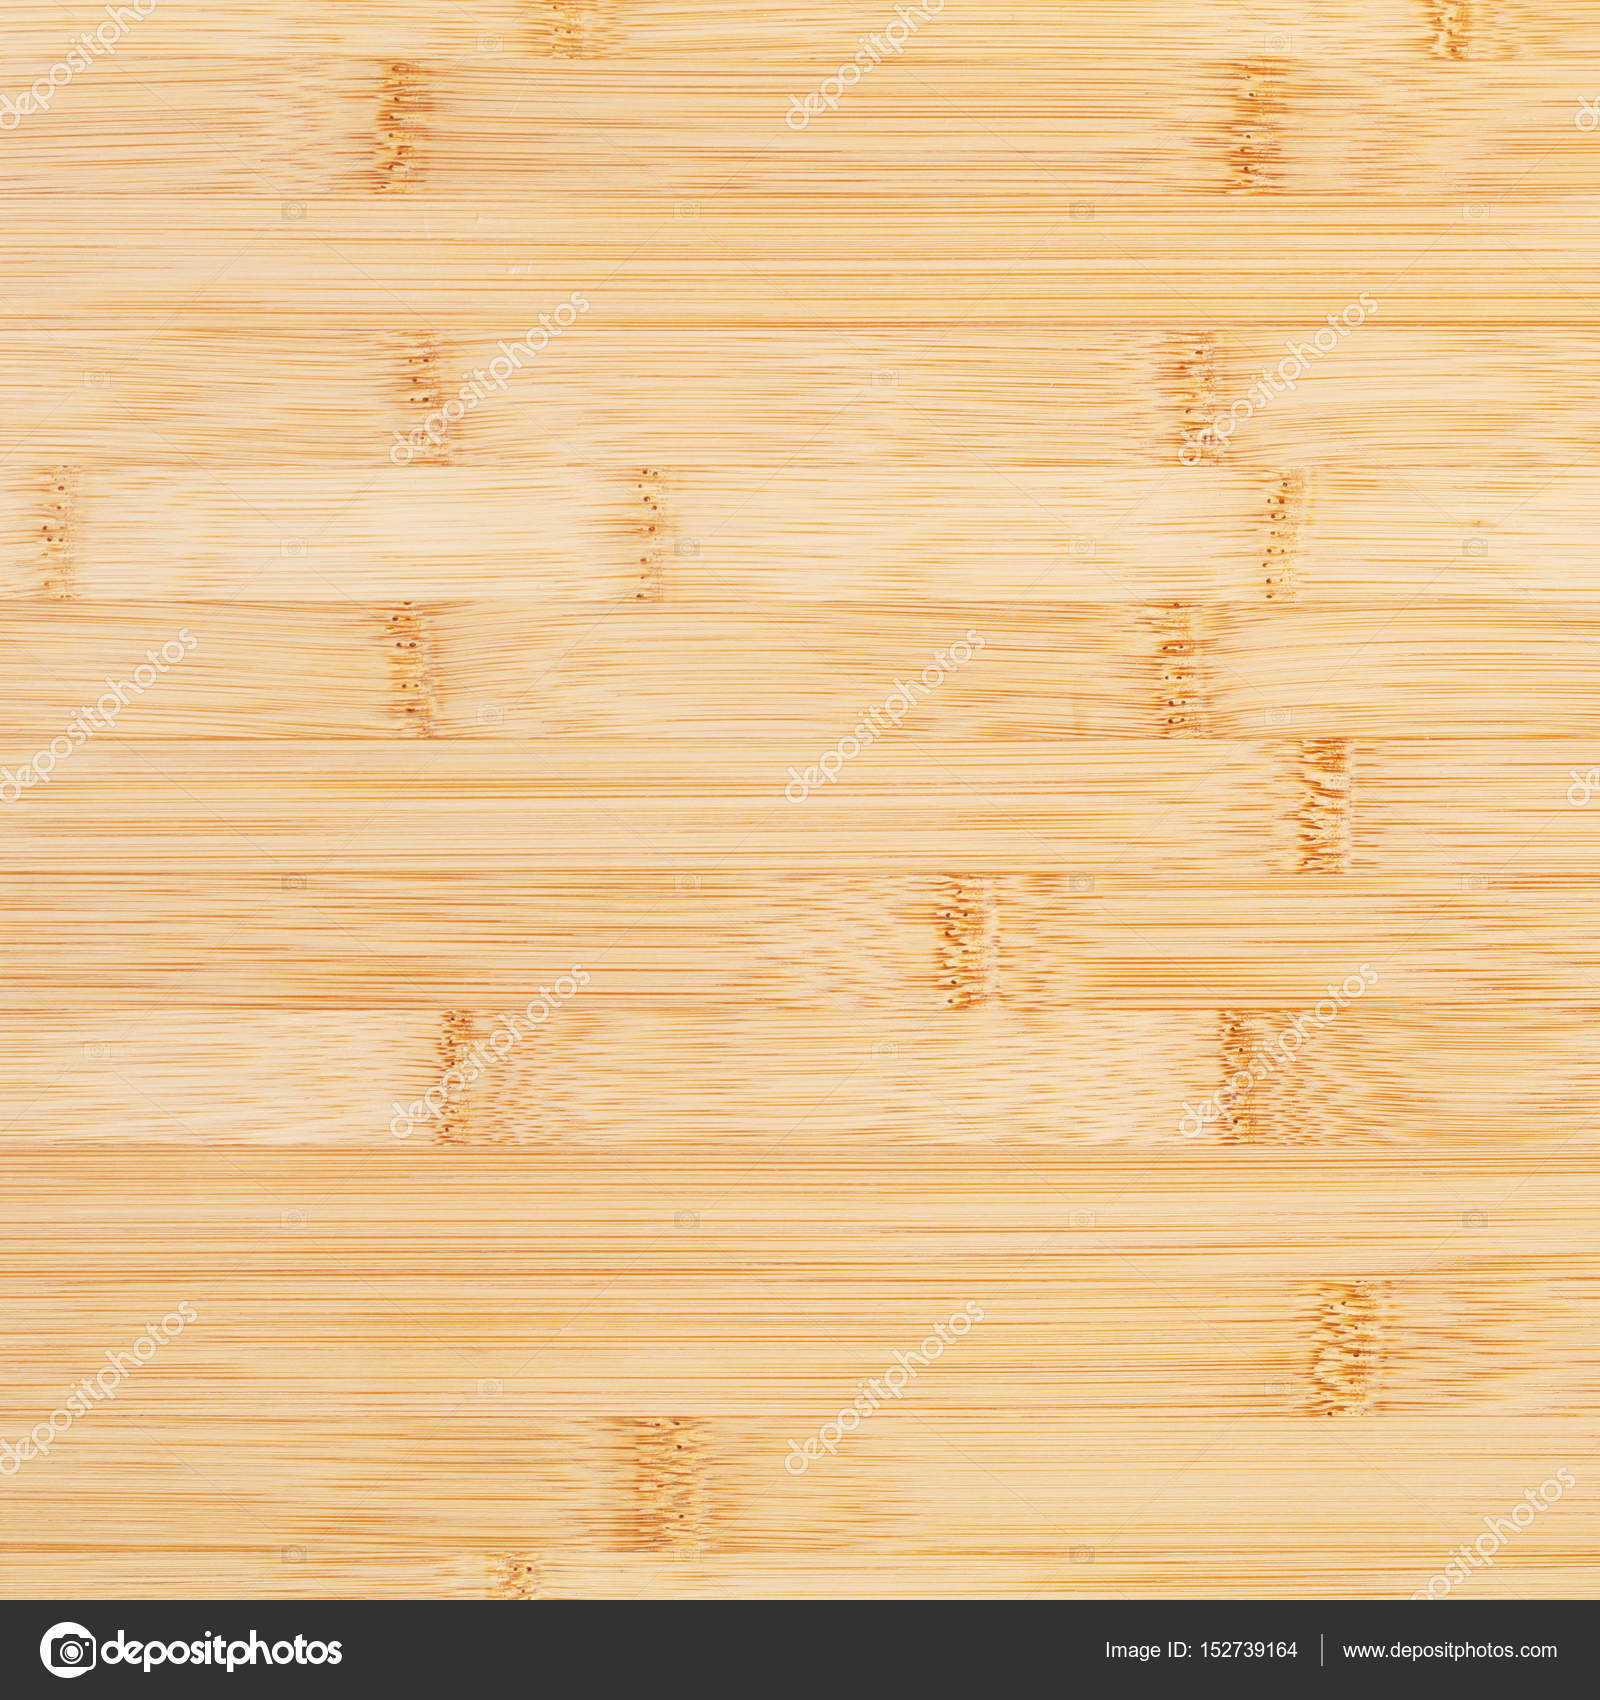 https://st3.depositphotos.com/1970689/15273/i/1600/depositphotos_152739164-stock-photo-close-bamboo-wood-cutting-board.jpg